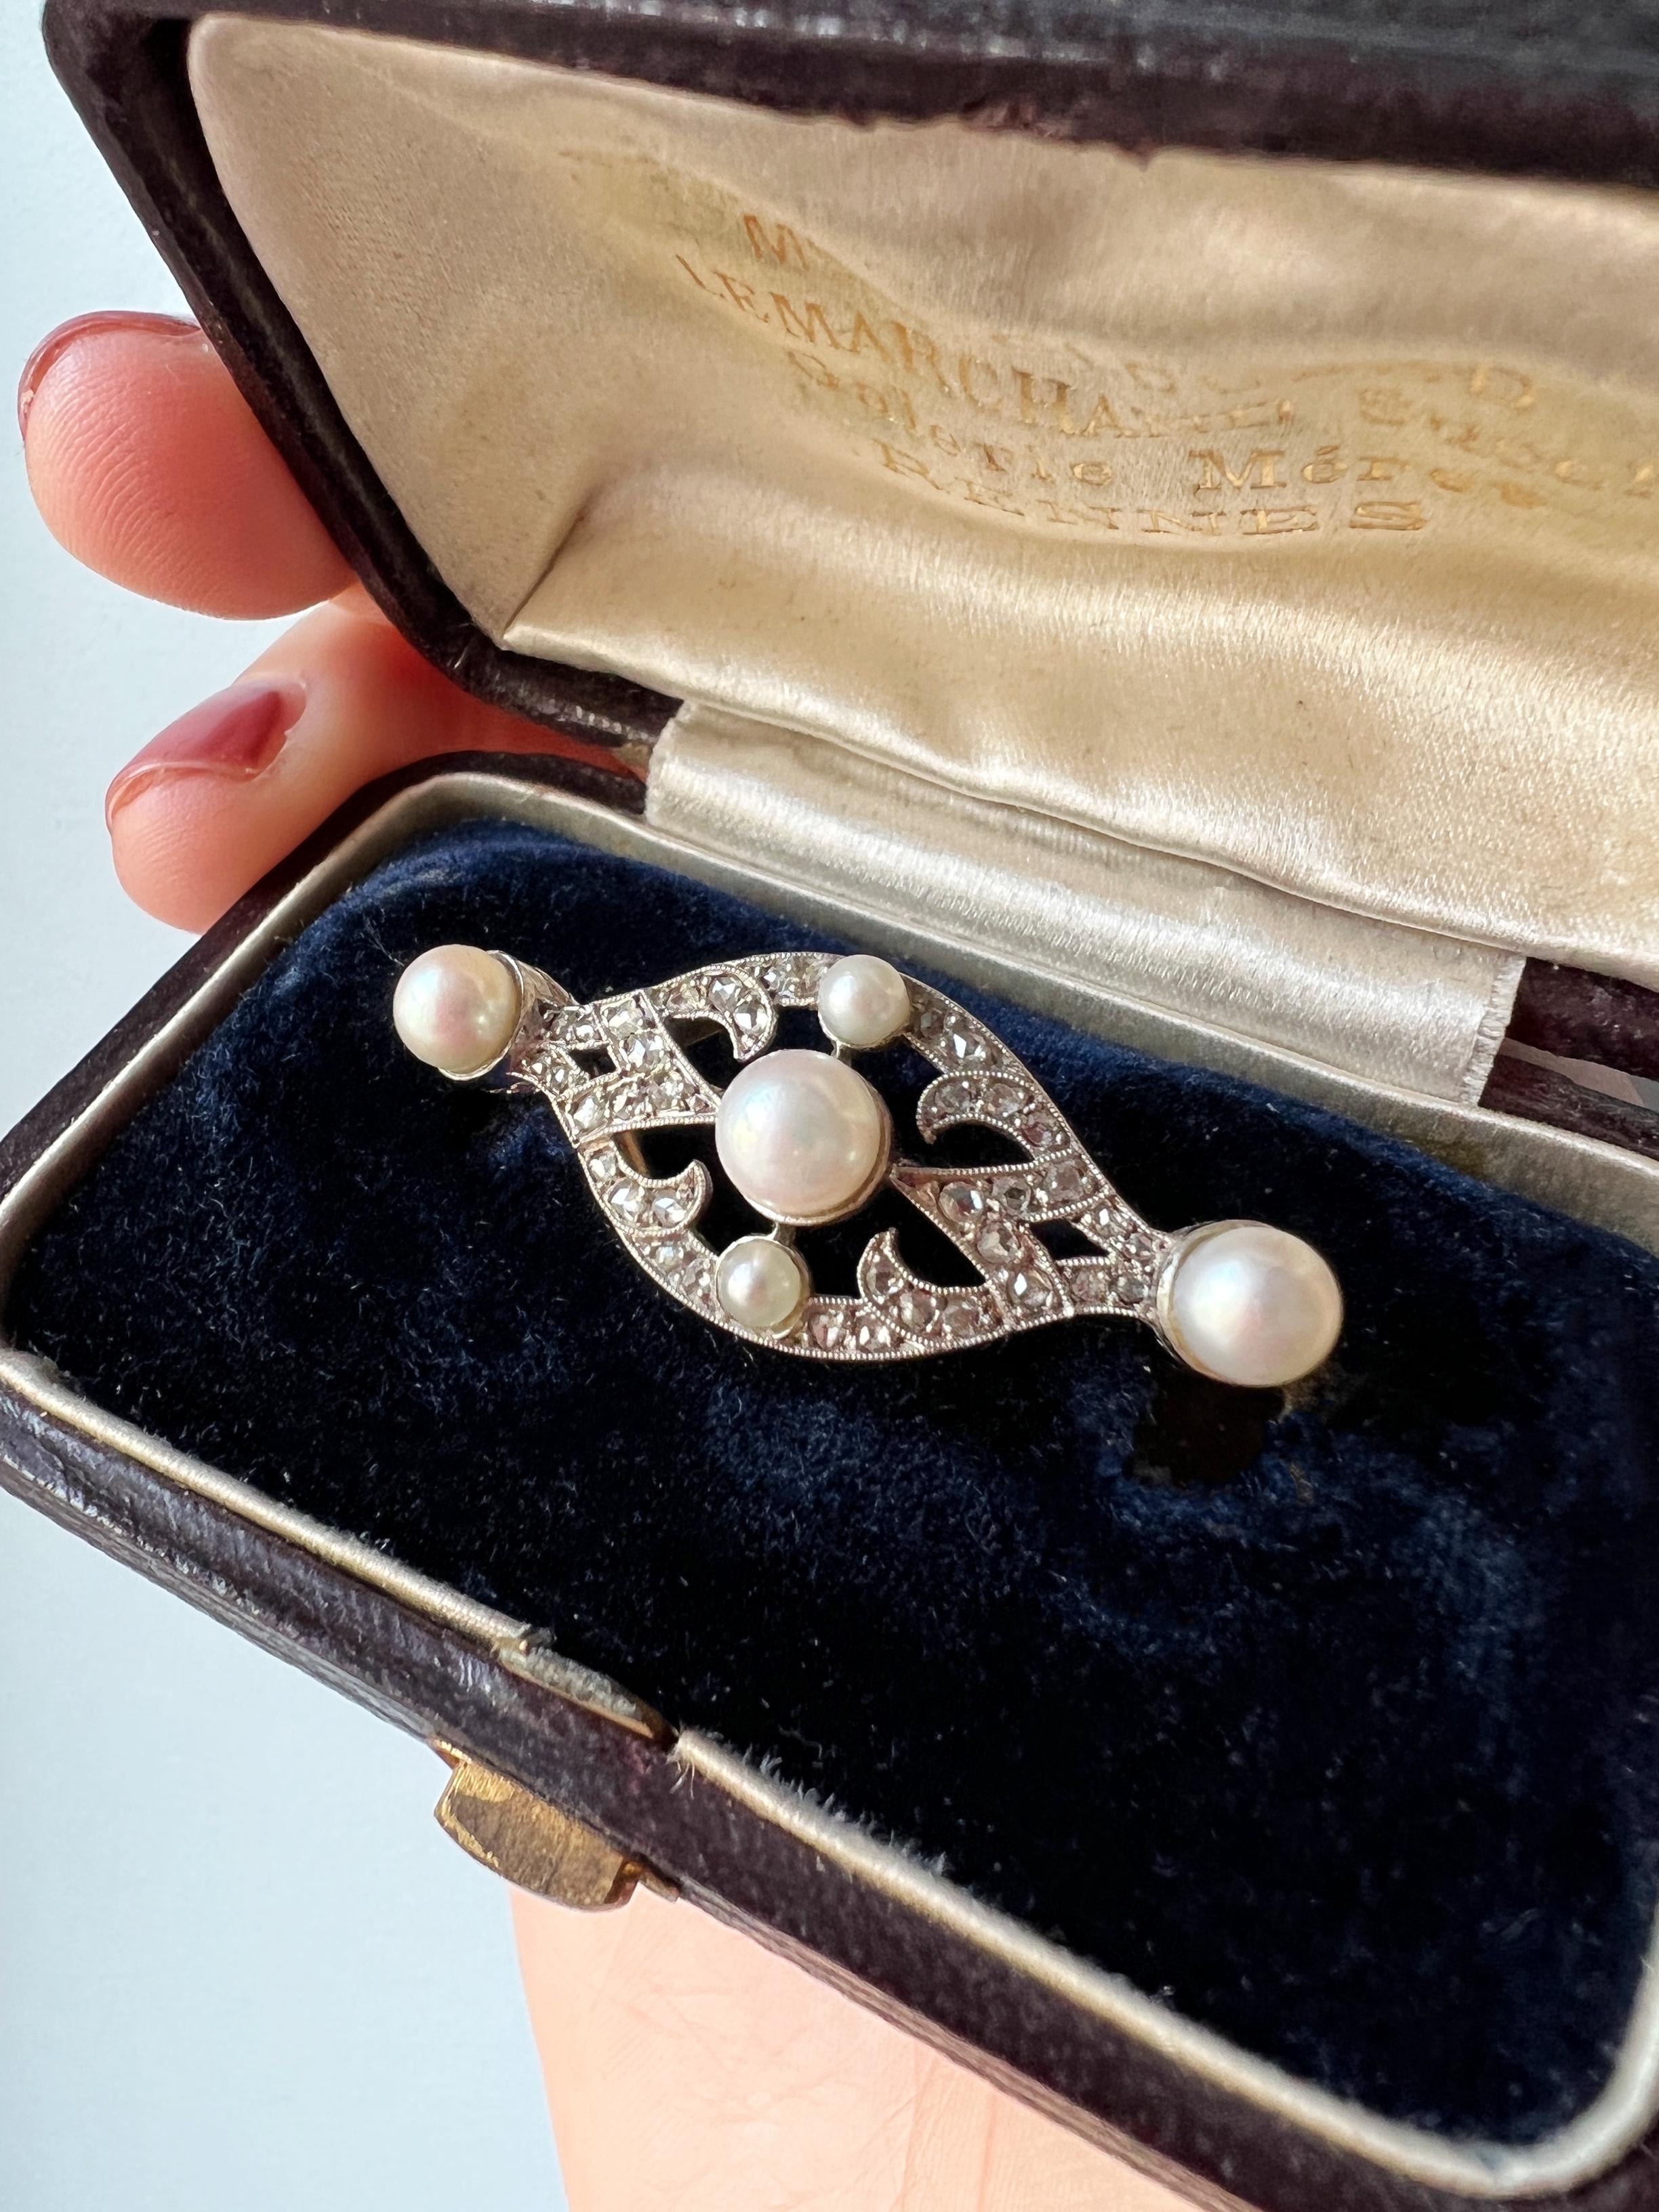 Les diamants et les perles offrent une combinaison classique et intemporelle pour Noël. Les deux pierres précieuses se complètent parfaitement, les perles adoucissant l'éblouissement des diamants. A vendre une broche raffinée et très élégante de